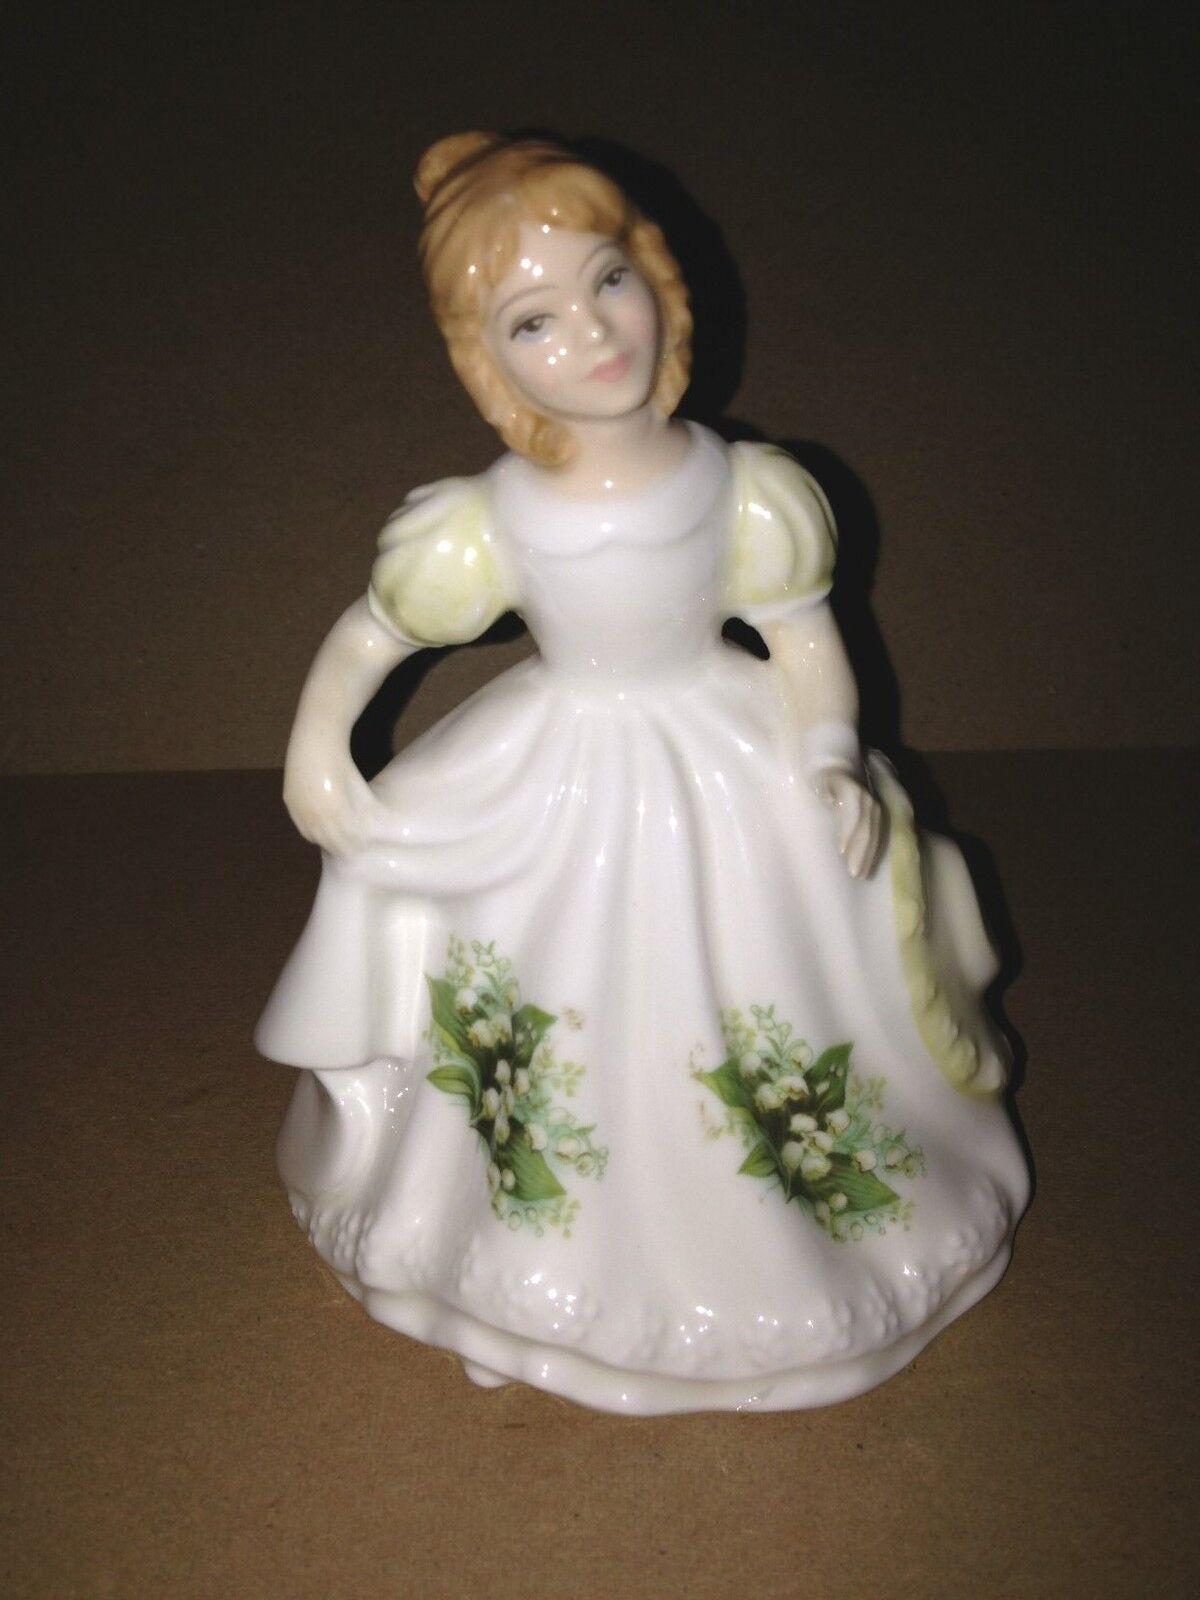 Vintage Retired Royal Doulton Porcelain Figurine HN 3334 FIGURE OF MONTH 